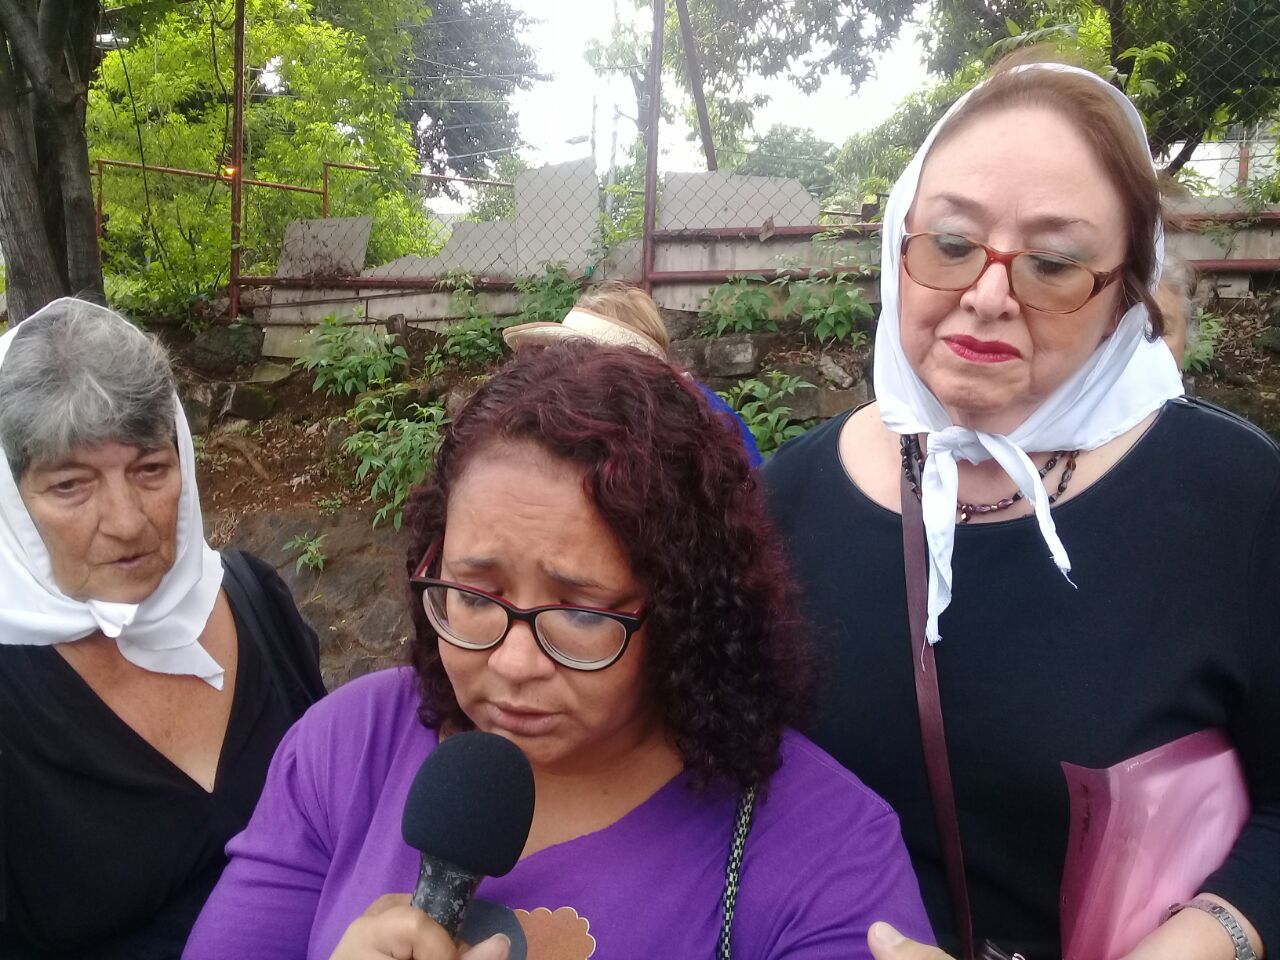 Arlen Cerda leyendo la carta enviada por las "Madres de la Plaza de Mayo de Argentina", quienes se solidarizan con las madres nicaraguenses que perdieron a sus hijos. Foto: A. Mogollón